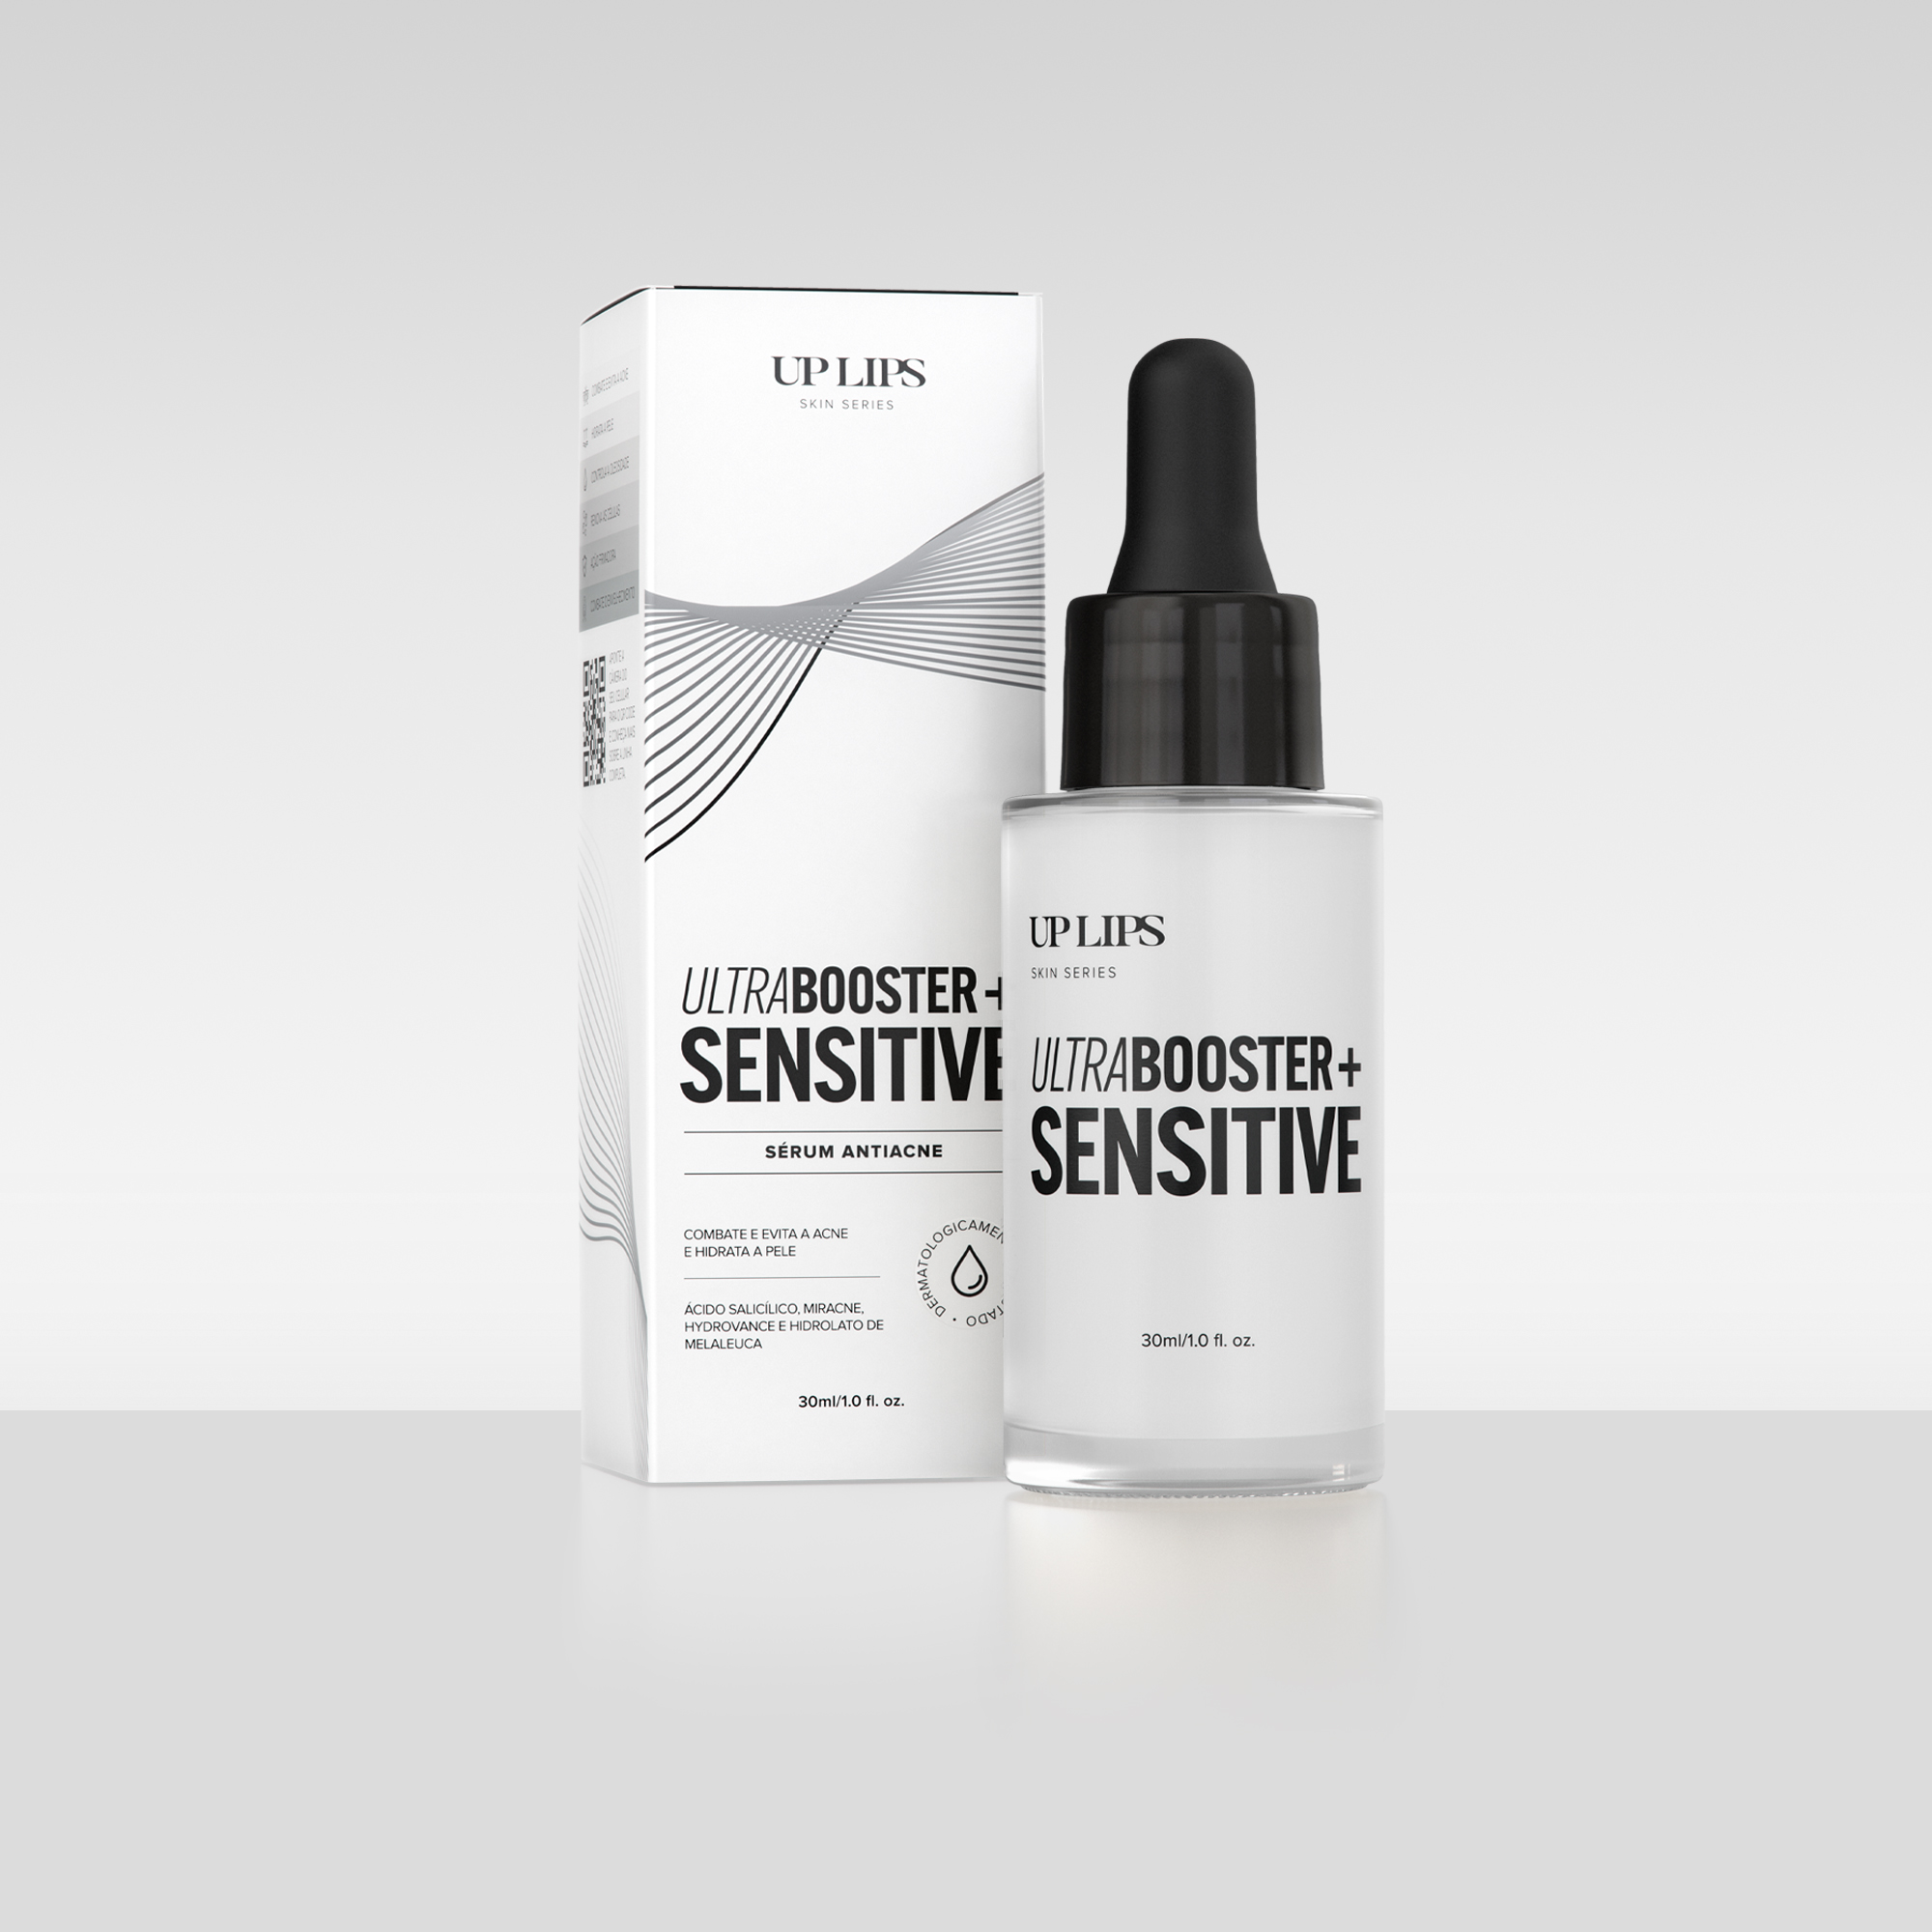 Imagem do produto Sérum Ultrabooster + Sensitive da Up Lips, sérum antiacne do lado da embalagem que o produto vem dentro